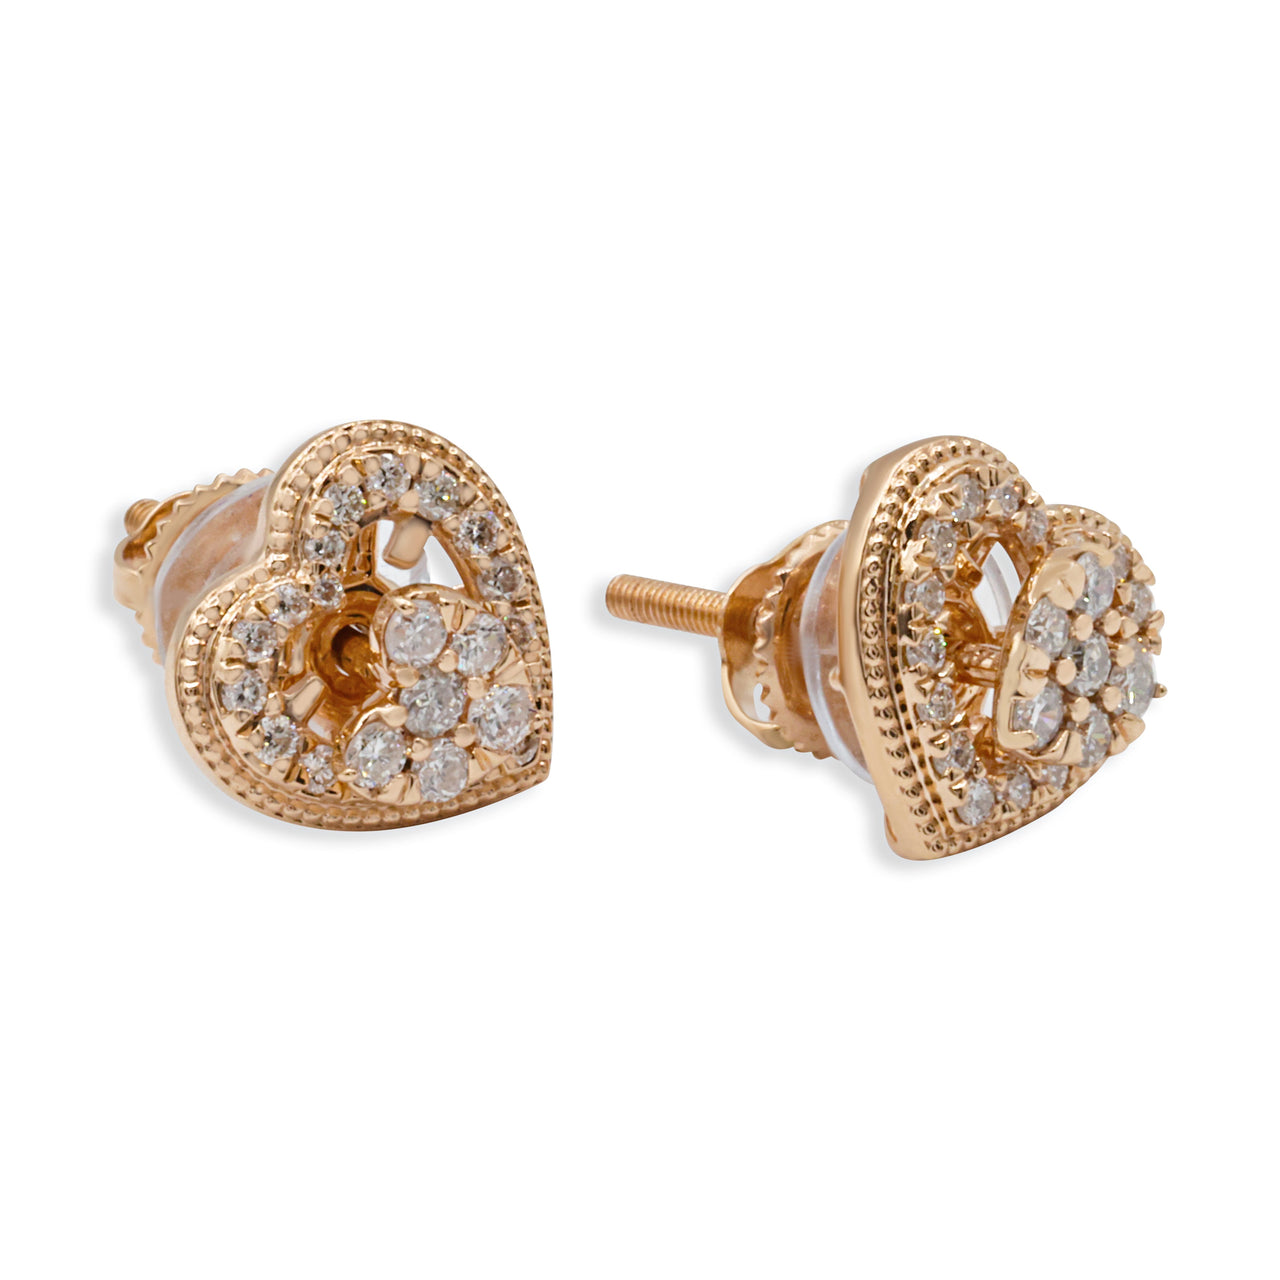 14k Yellow Gold Diamond Heart Shaped Stud Earrings 0.47 ctw